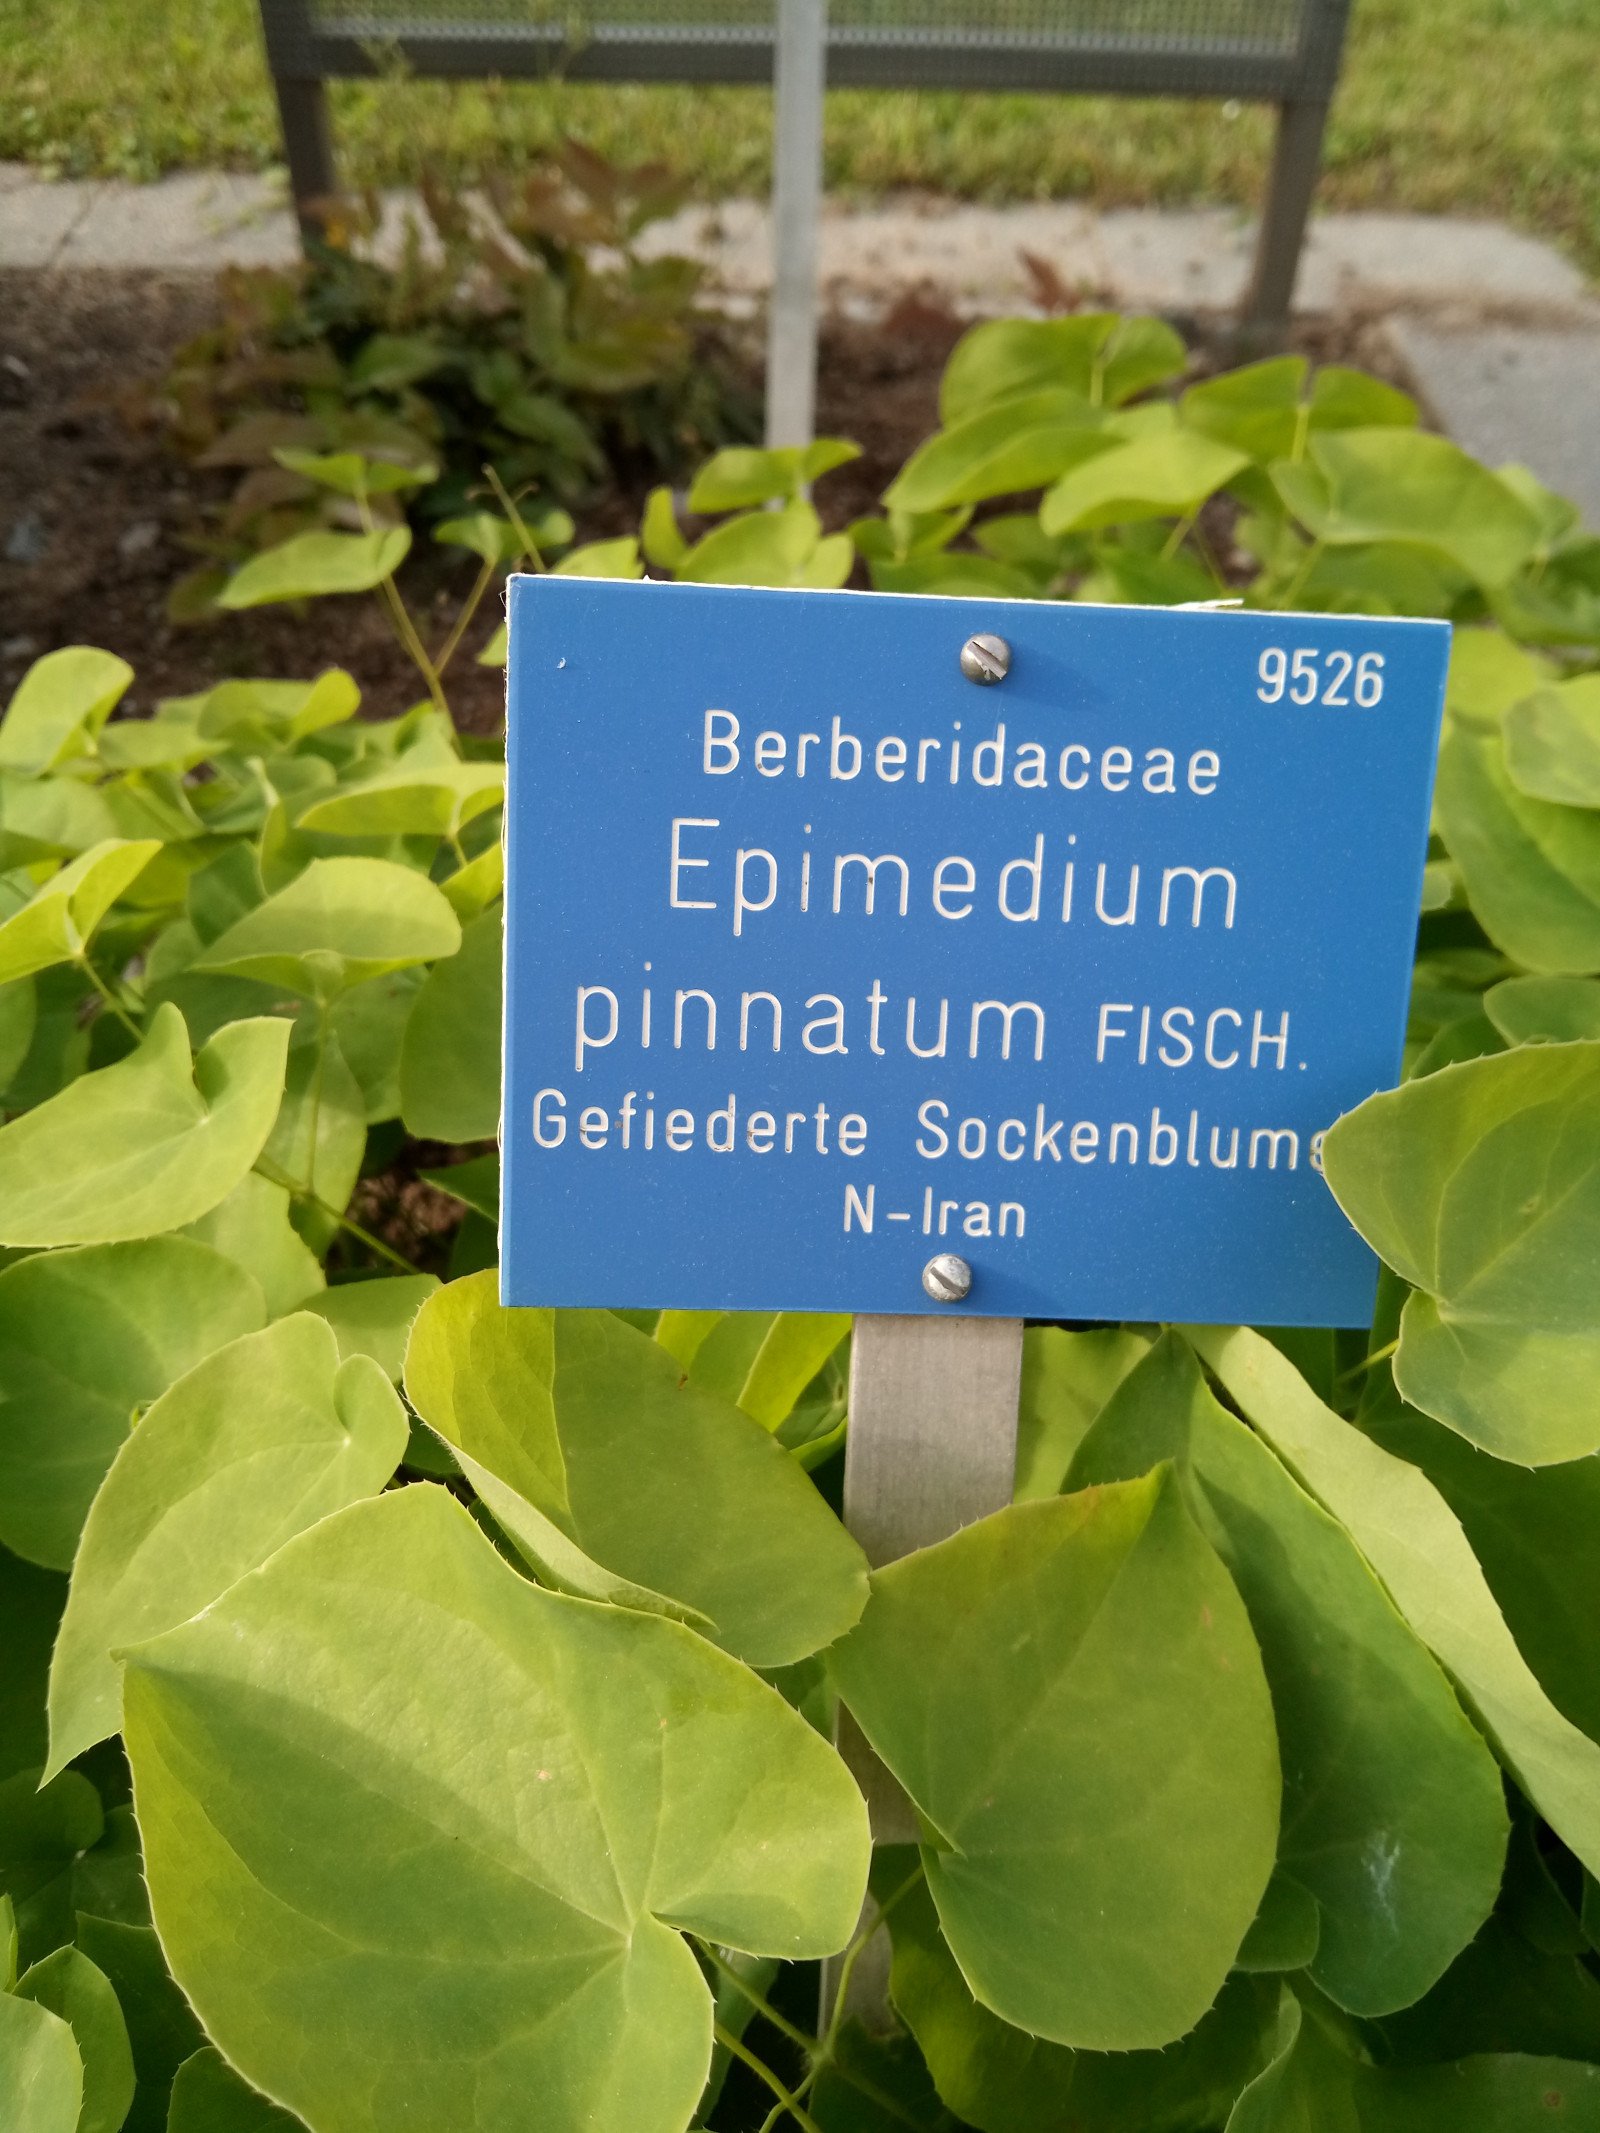 Epimedium pinnatum - Entire plant